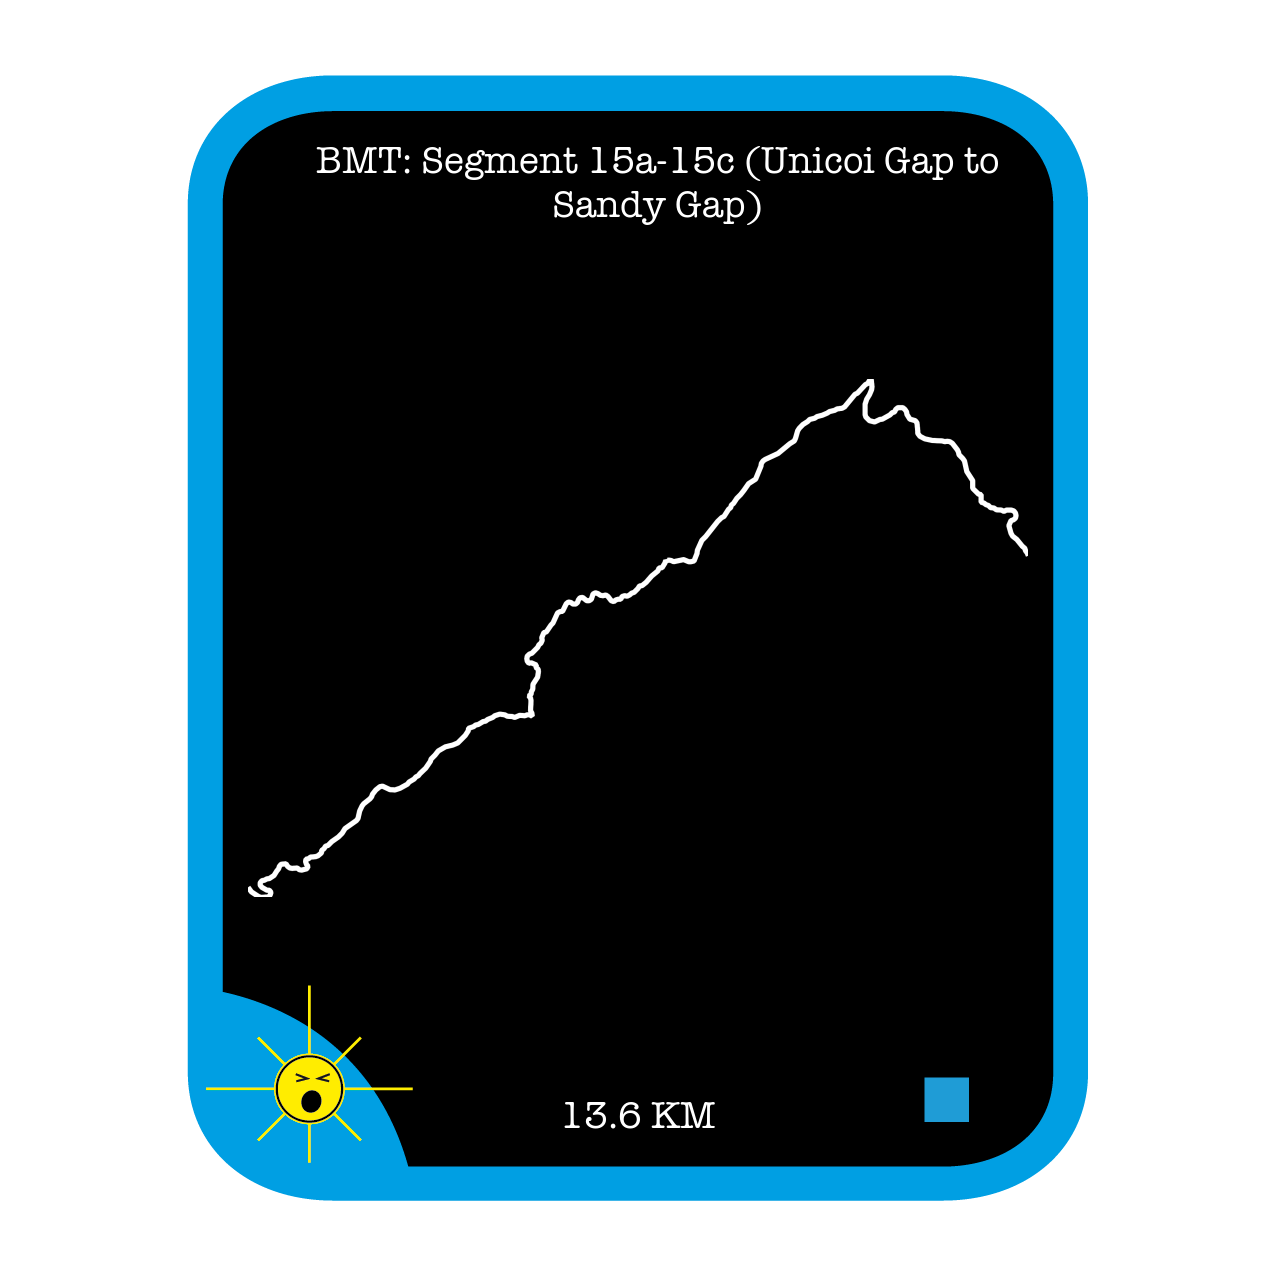 BMT: Segment 15a-15c (Unicoi Gap to Sandy Gap)